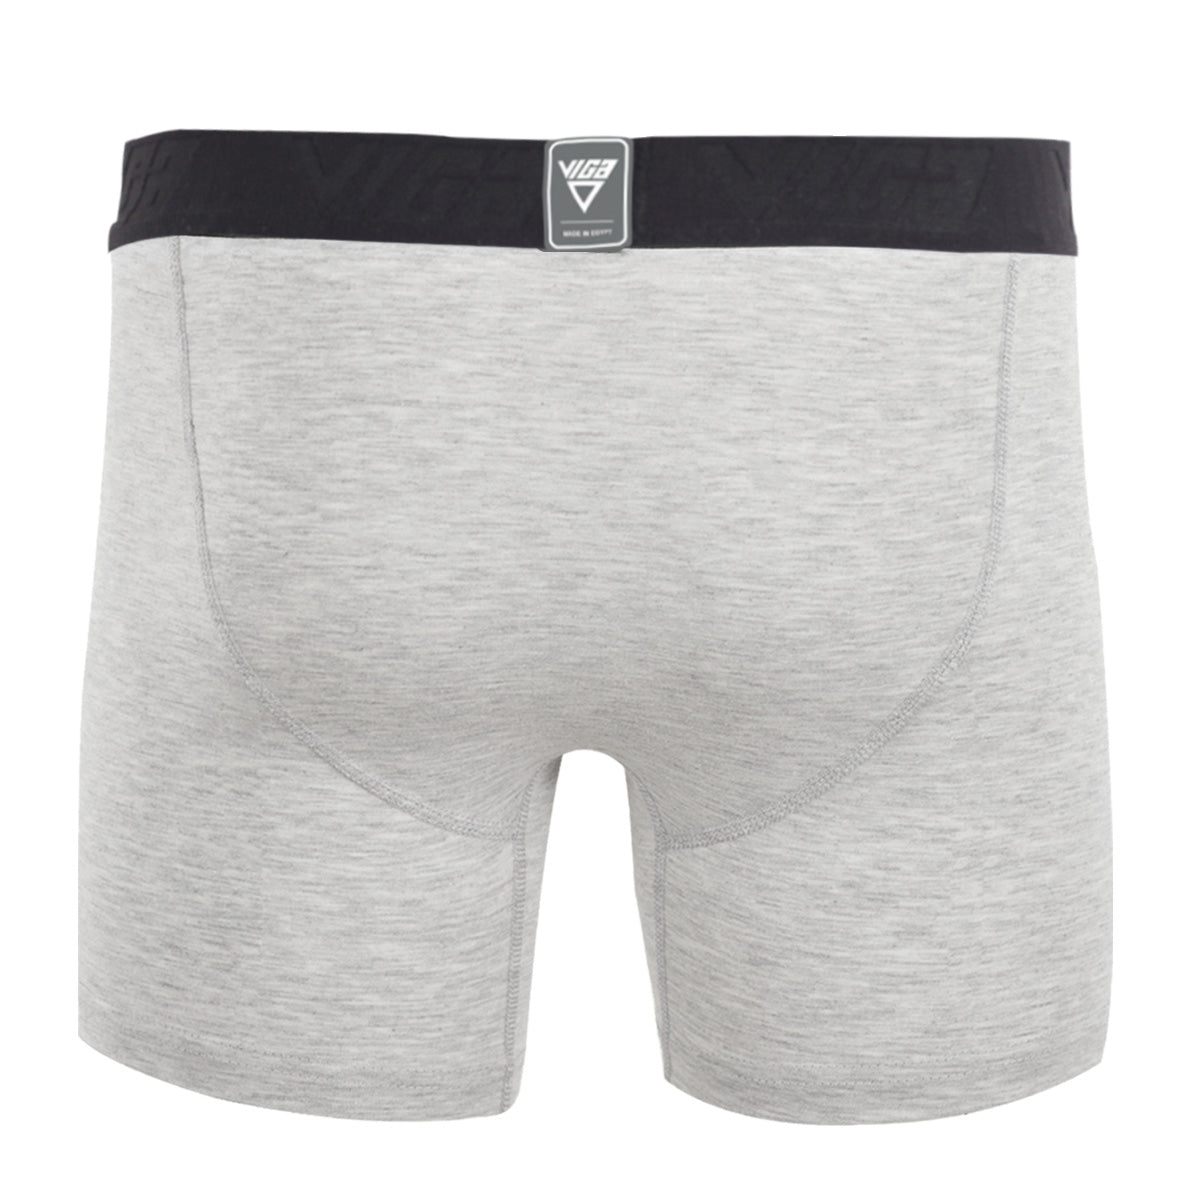 Viga boxer shorts - Grey